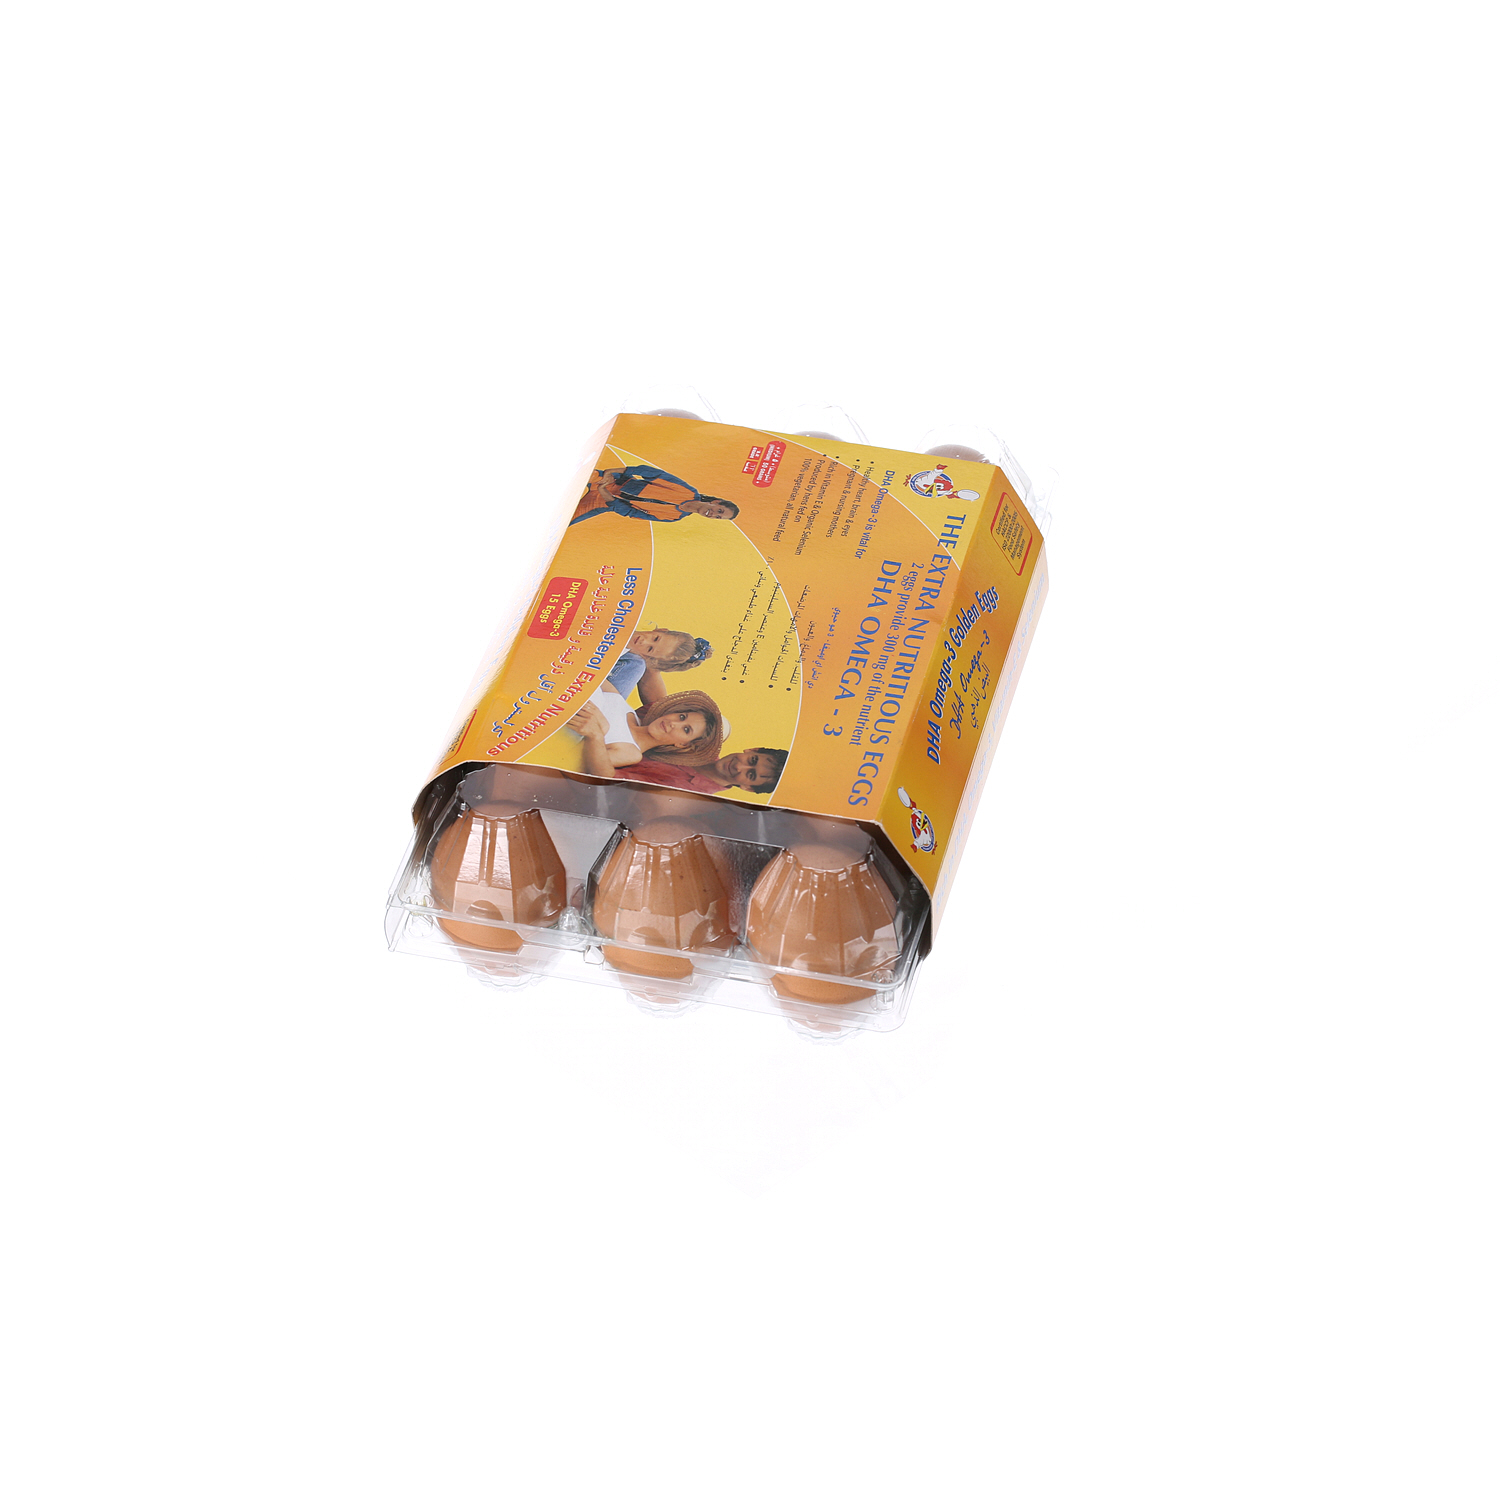 Al Jazira Eggs White and Brown Omega-3 Family Pack